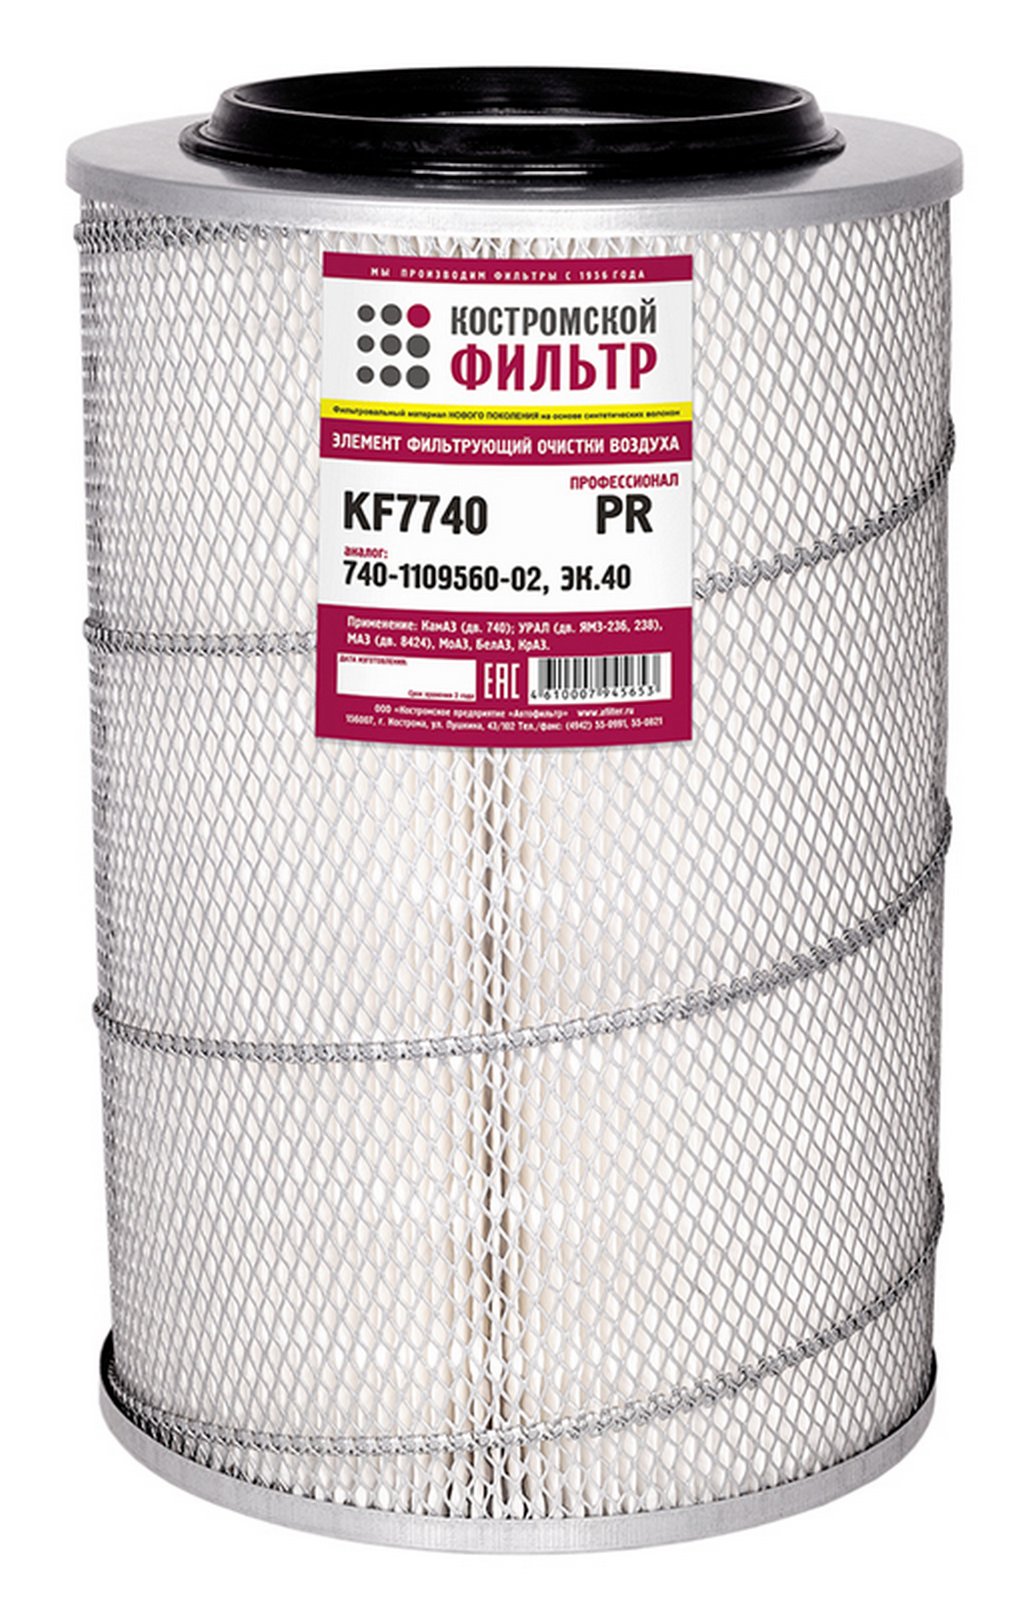 KF7740 PR Элемент фильтрующий очистки воздуха KF7740 PR (740-1109560-02, ЭК.40) Профессионал  Костромской фильтр